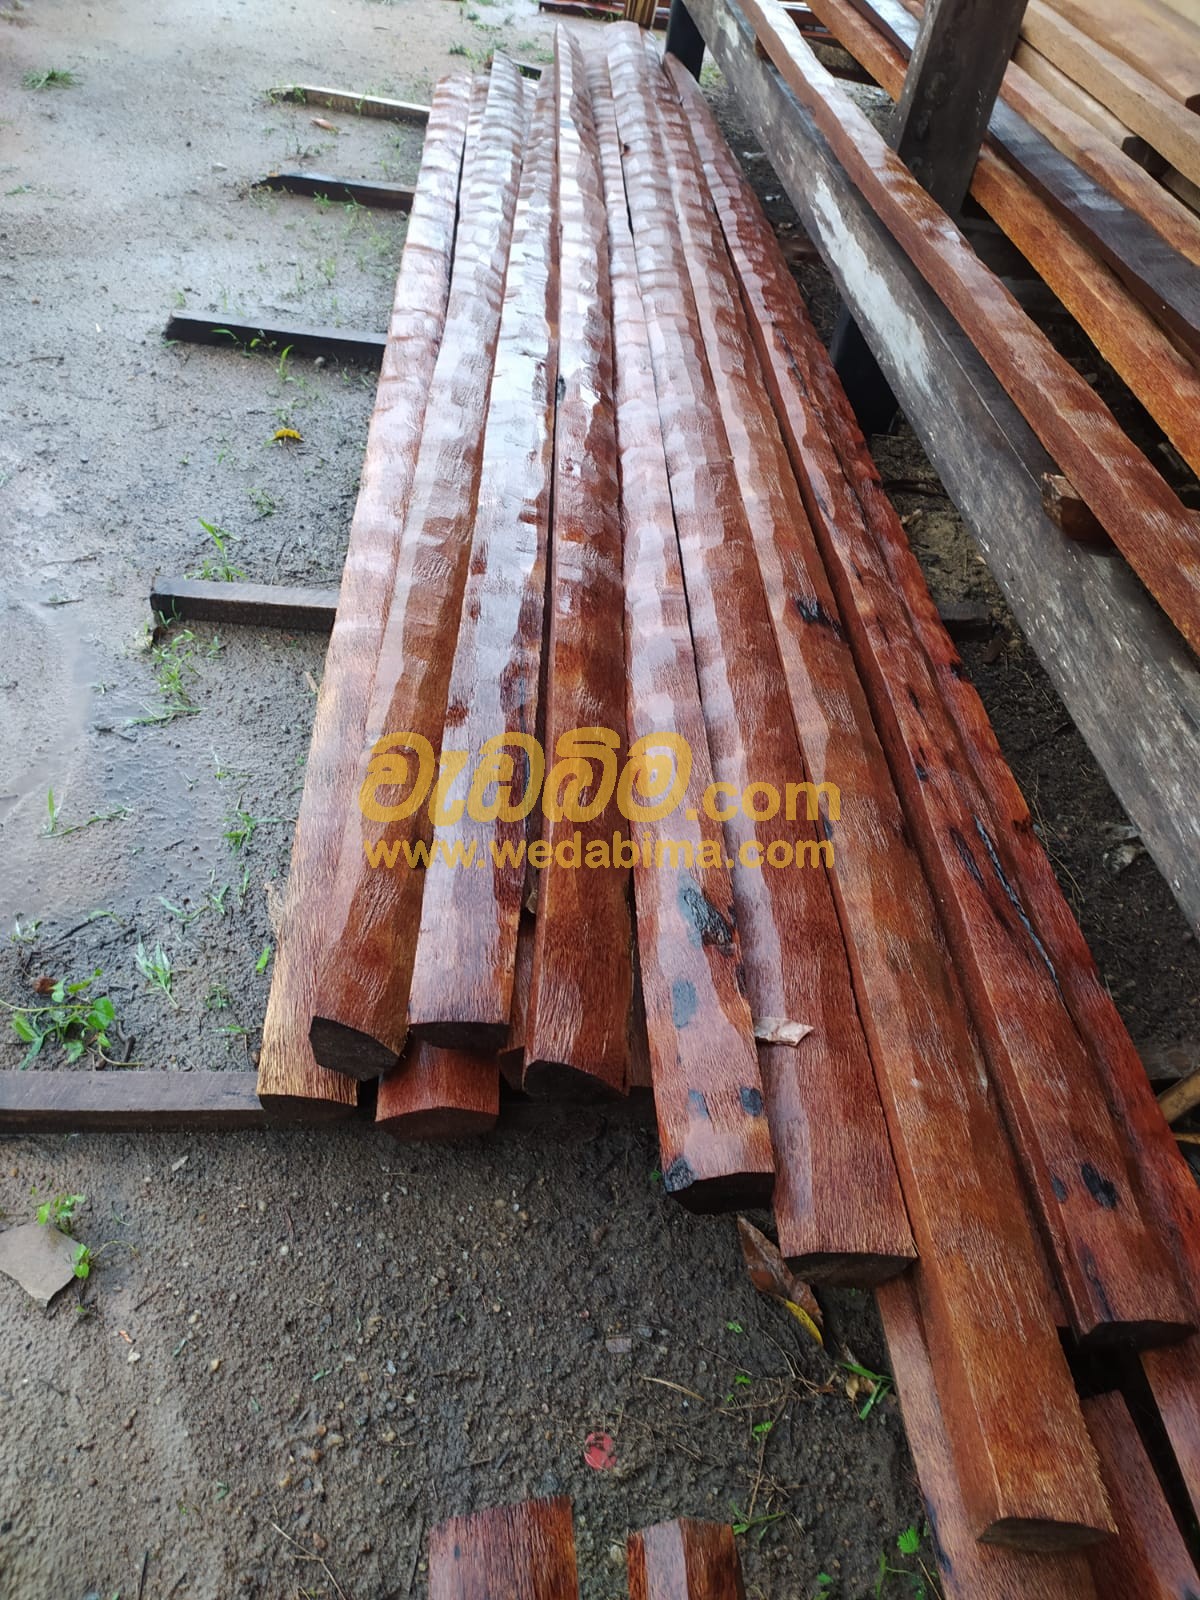 Teak Wood Price in Srilanka